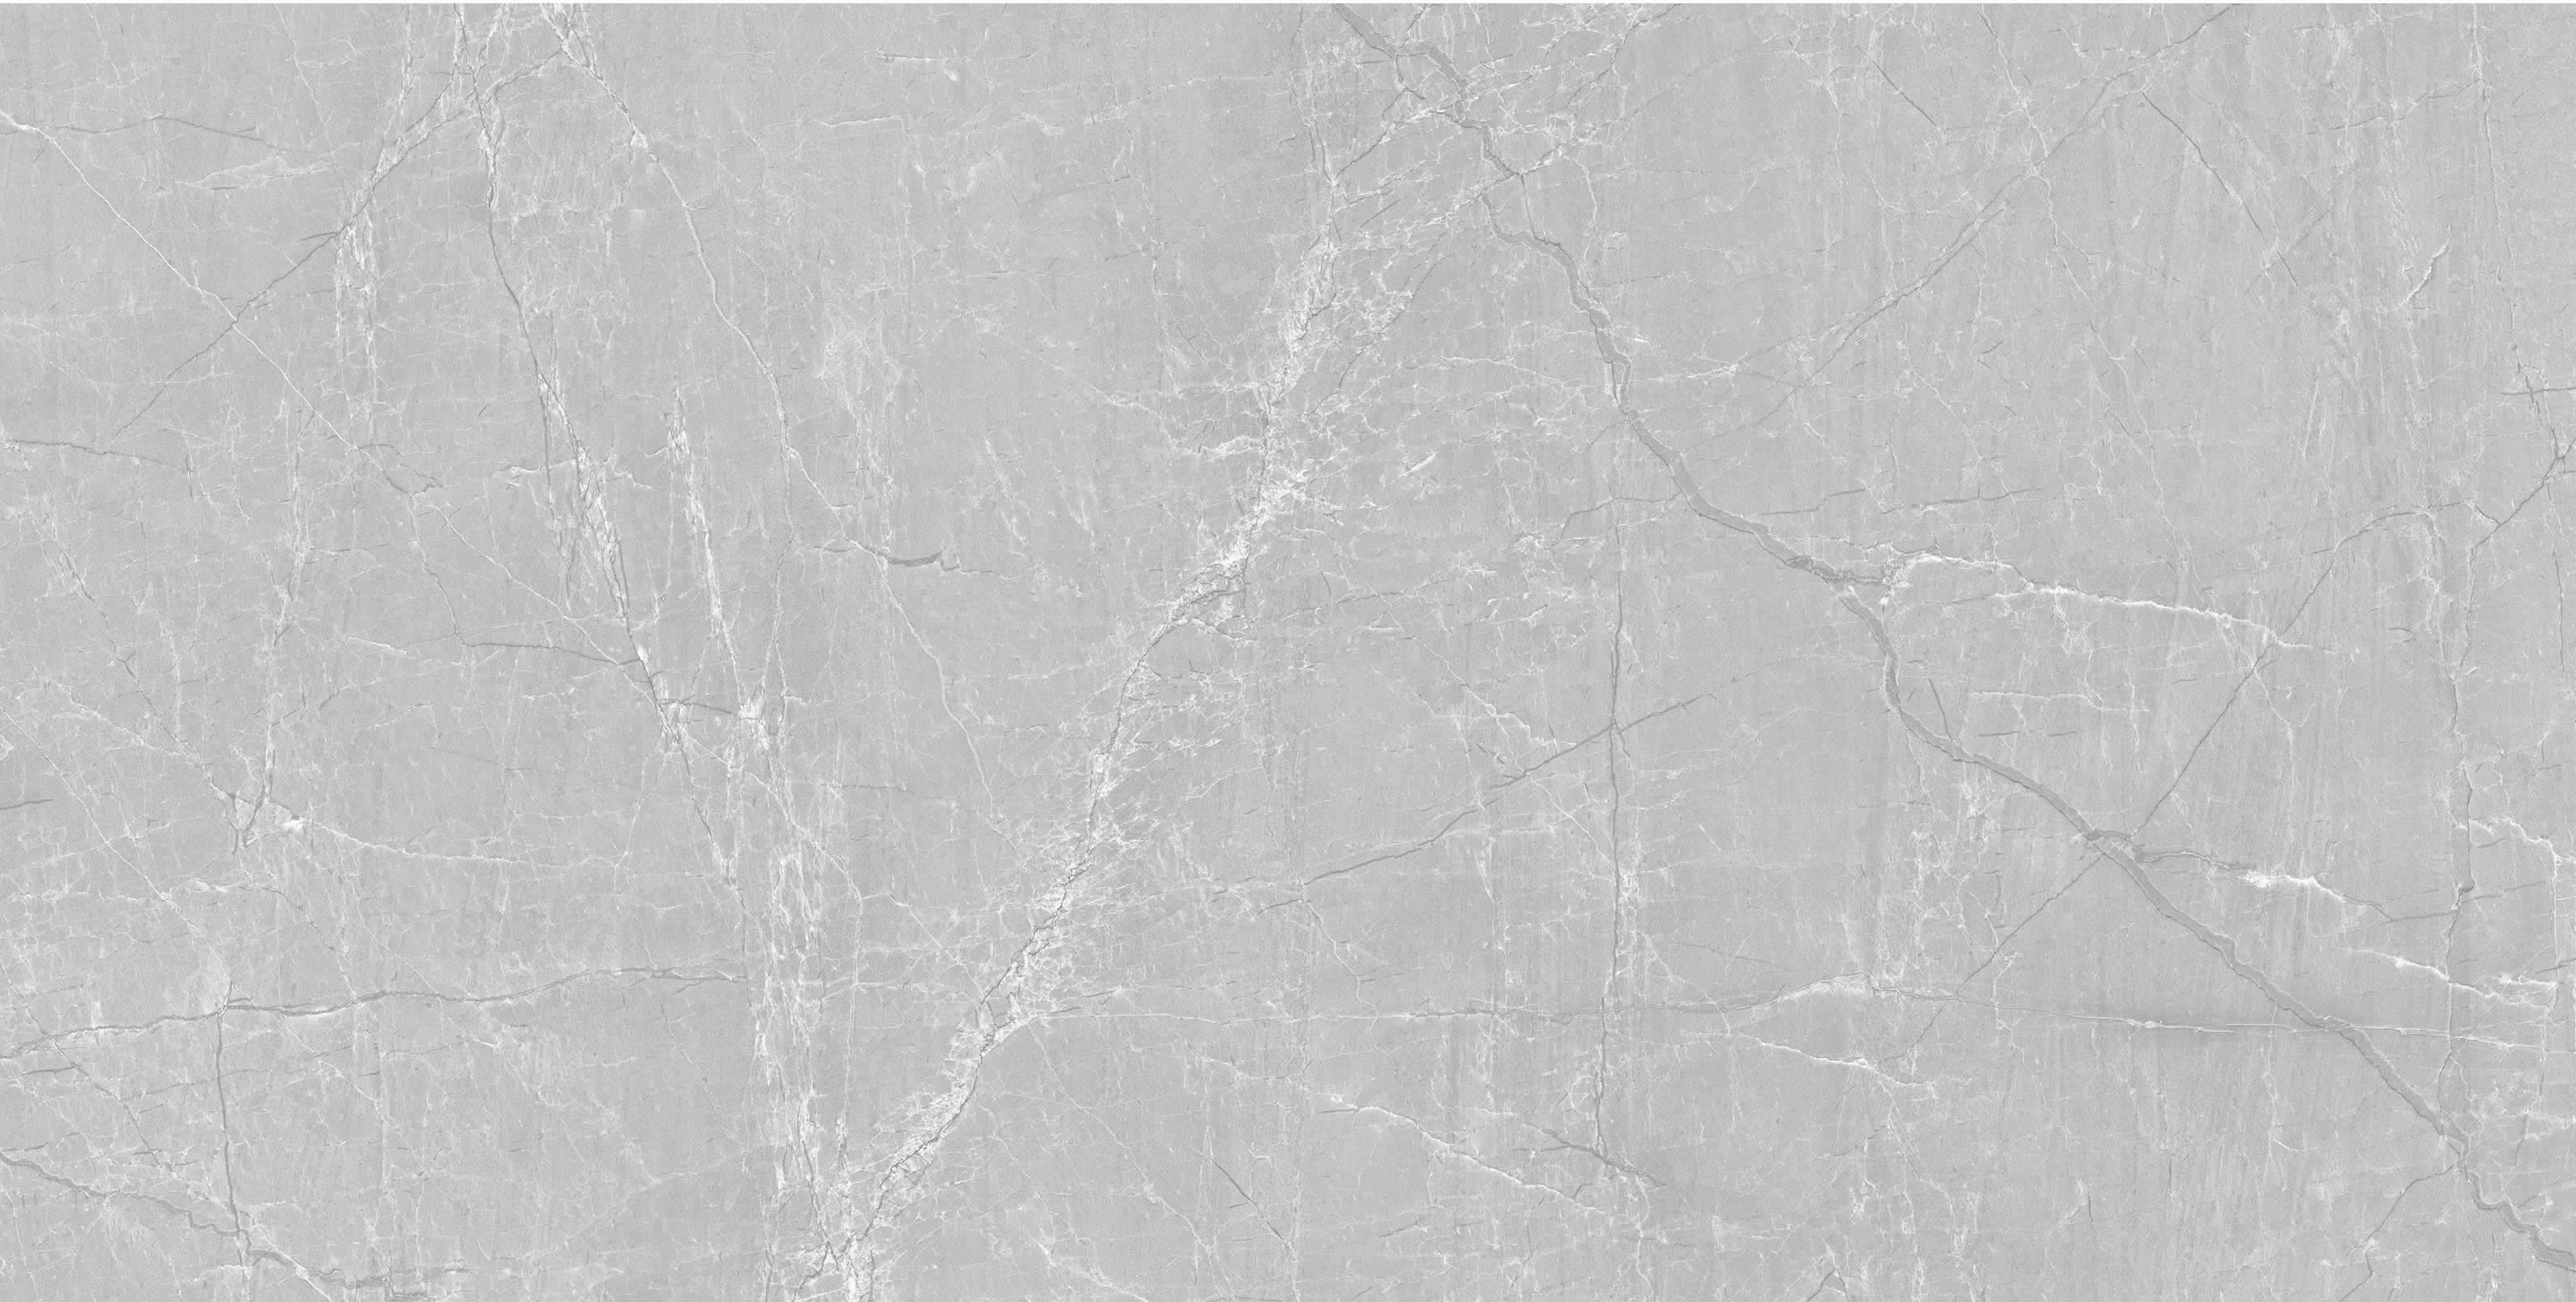 Floorest Porcelain Tile - Silver Grey 24" X 48" 16SF/BOX - CT24028